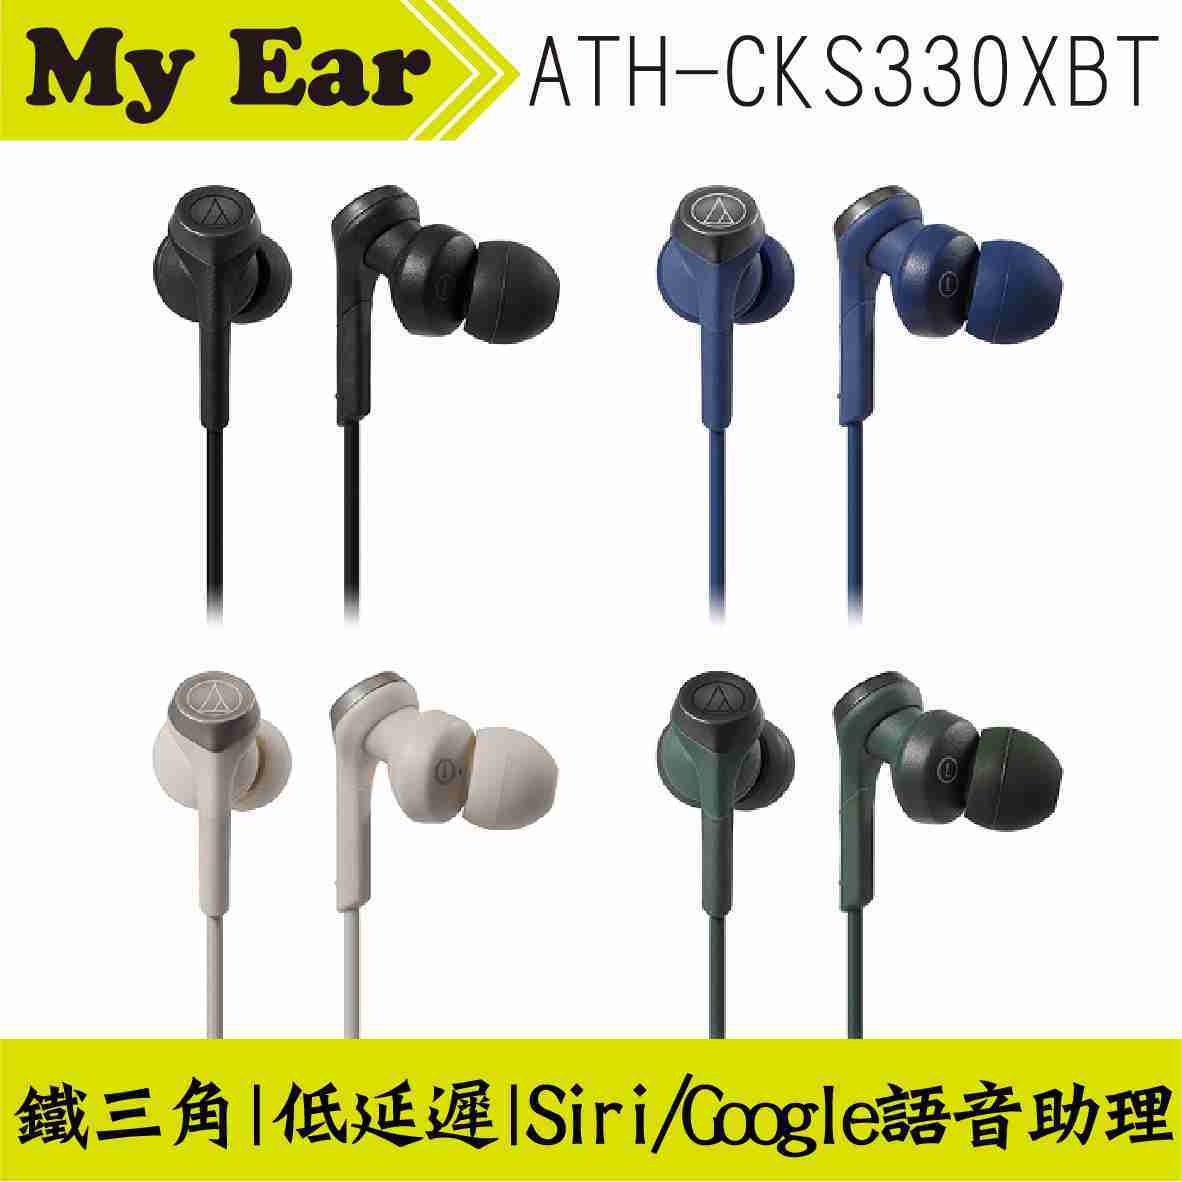 鐵三角 ATH-CKS330XBT 藍色 藍芽5.0 無線 耳道式耳機 | My Ear 耳機專門店